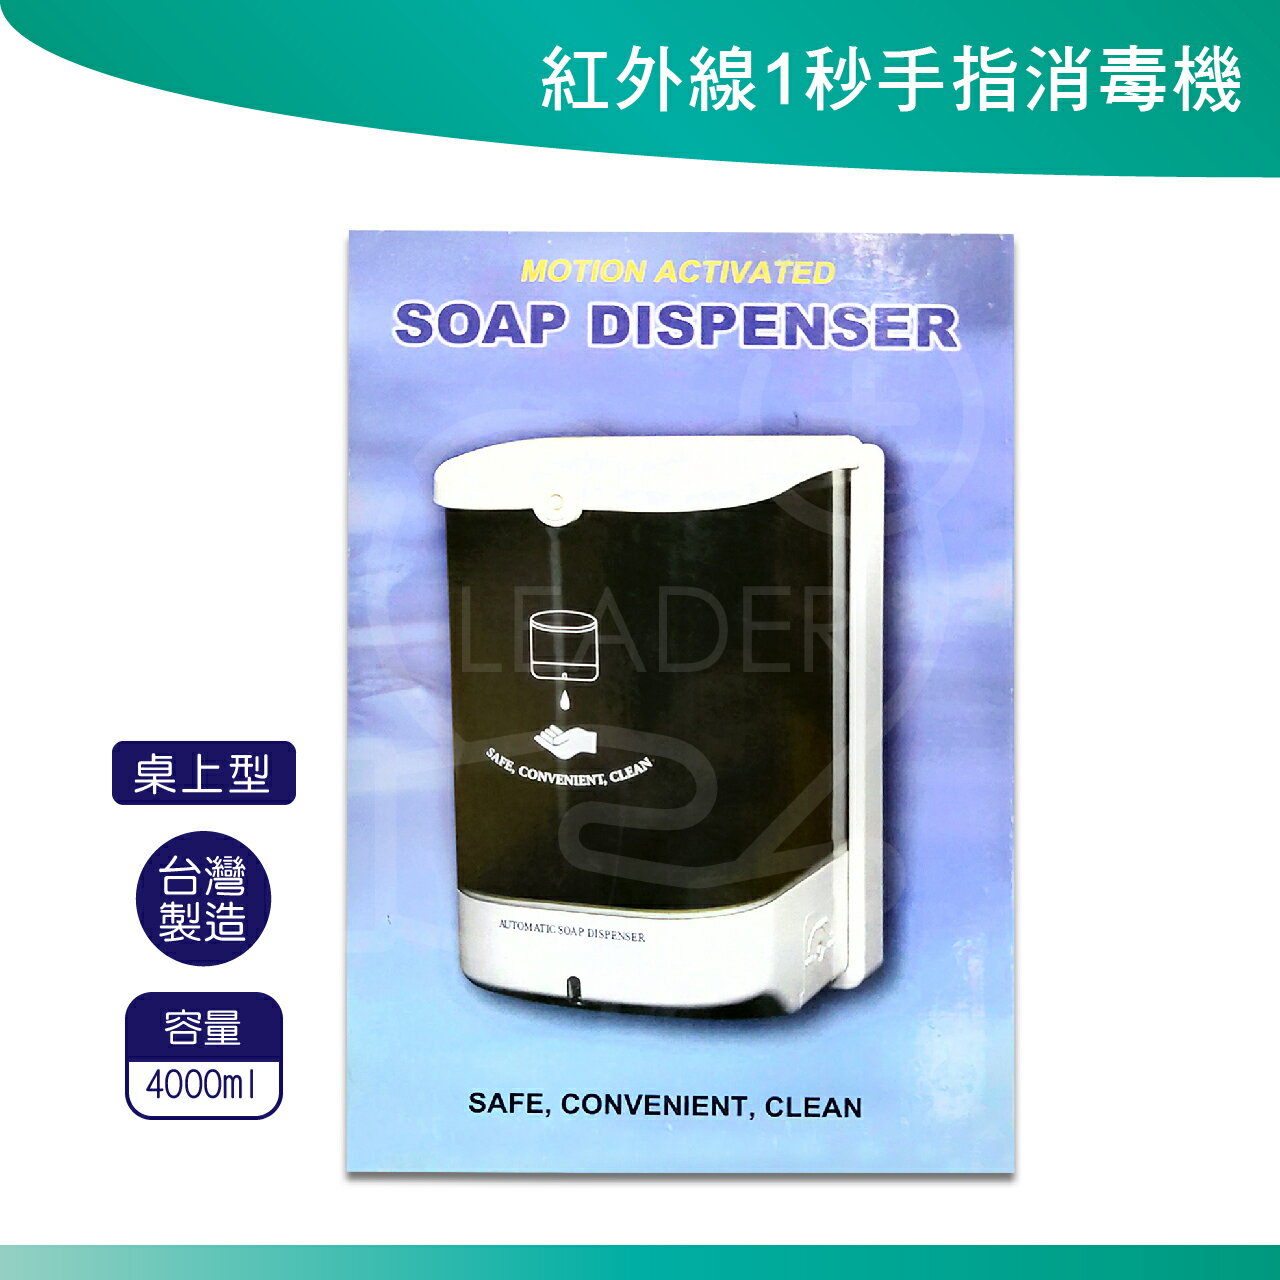 自動給皂機 TK-3000 給皂機 皂液置放機 酒精機 自動感應給皂機 酒精消毒機 清潔用品 公共場所